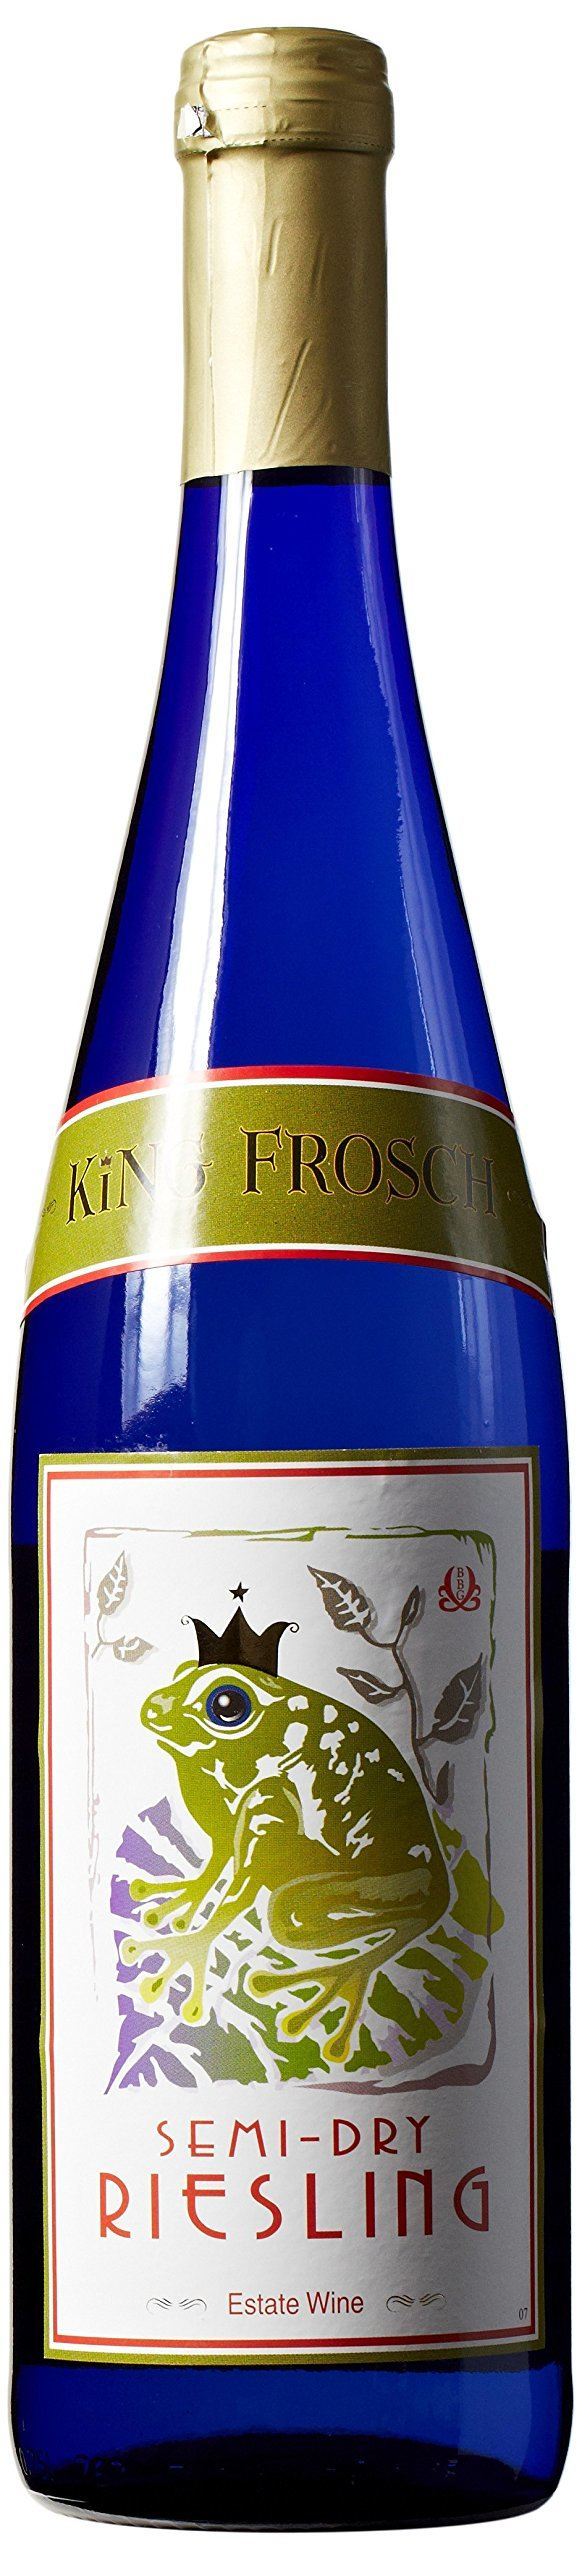 2011 King Frosch Riesling Kabinett Wine